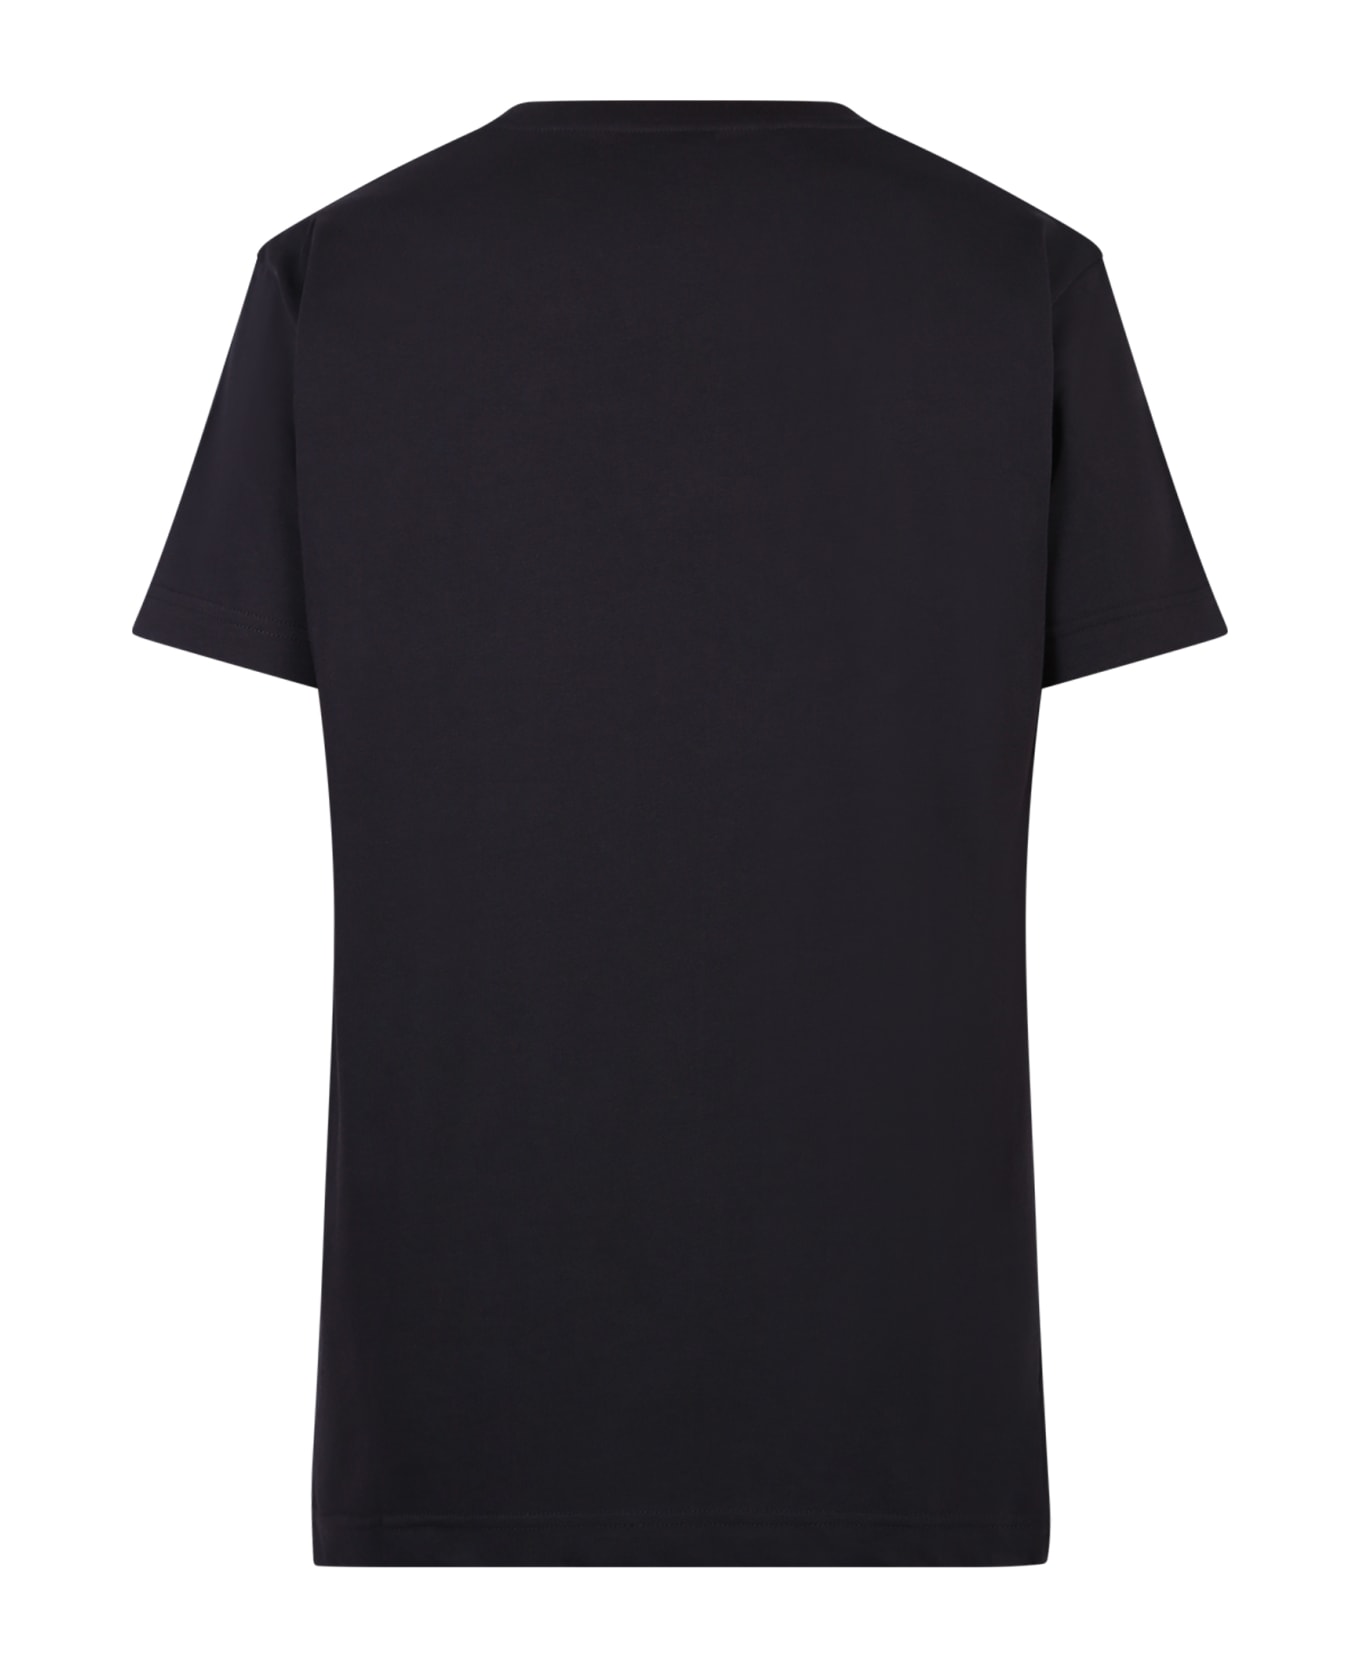 Giuseppe Zanotti Branded T-shirt - Black シャツ